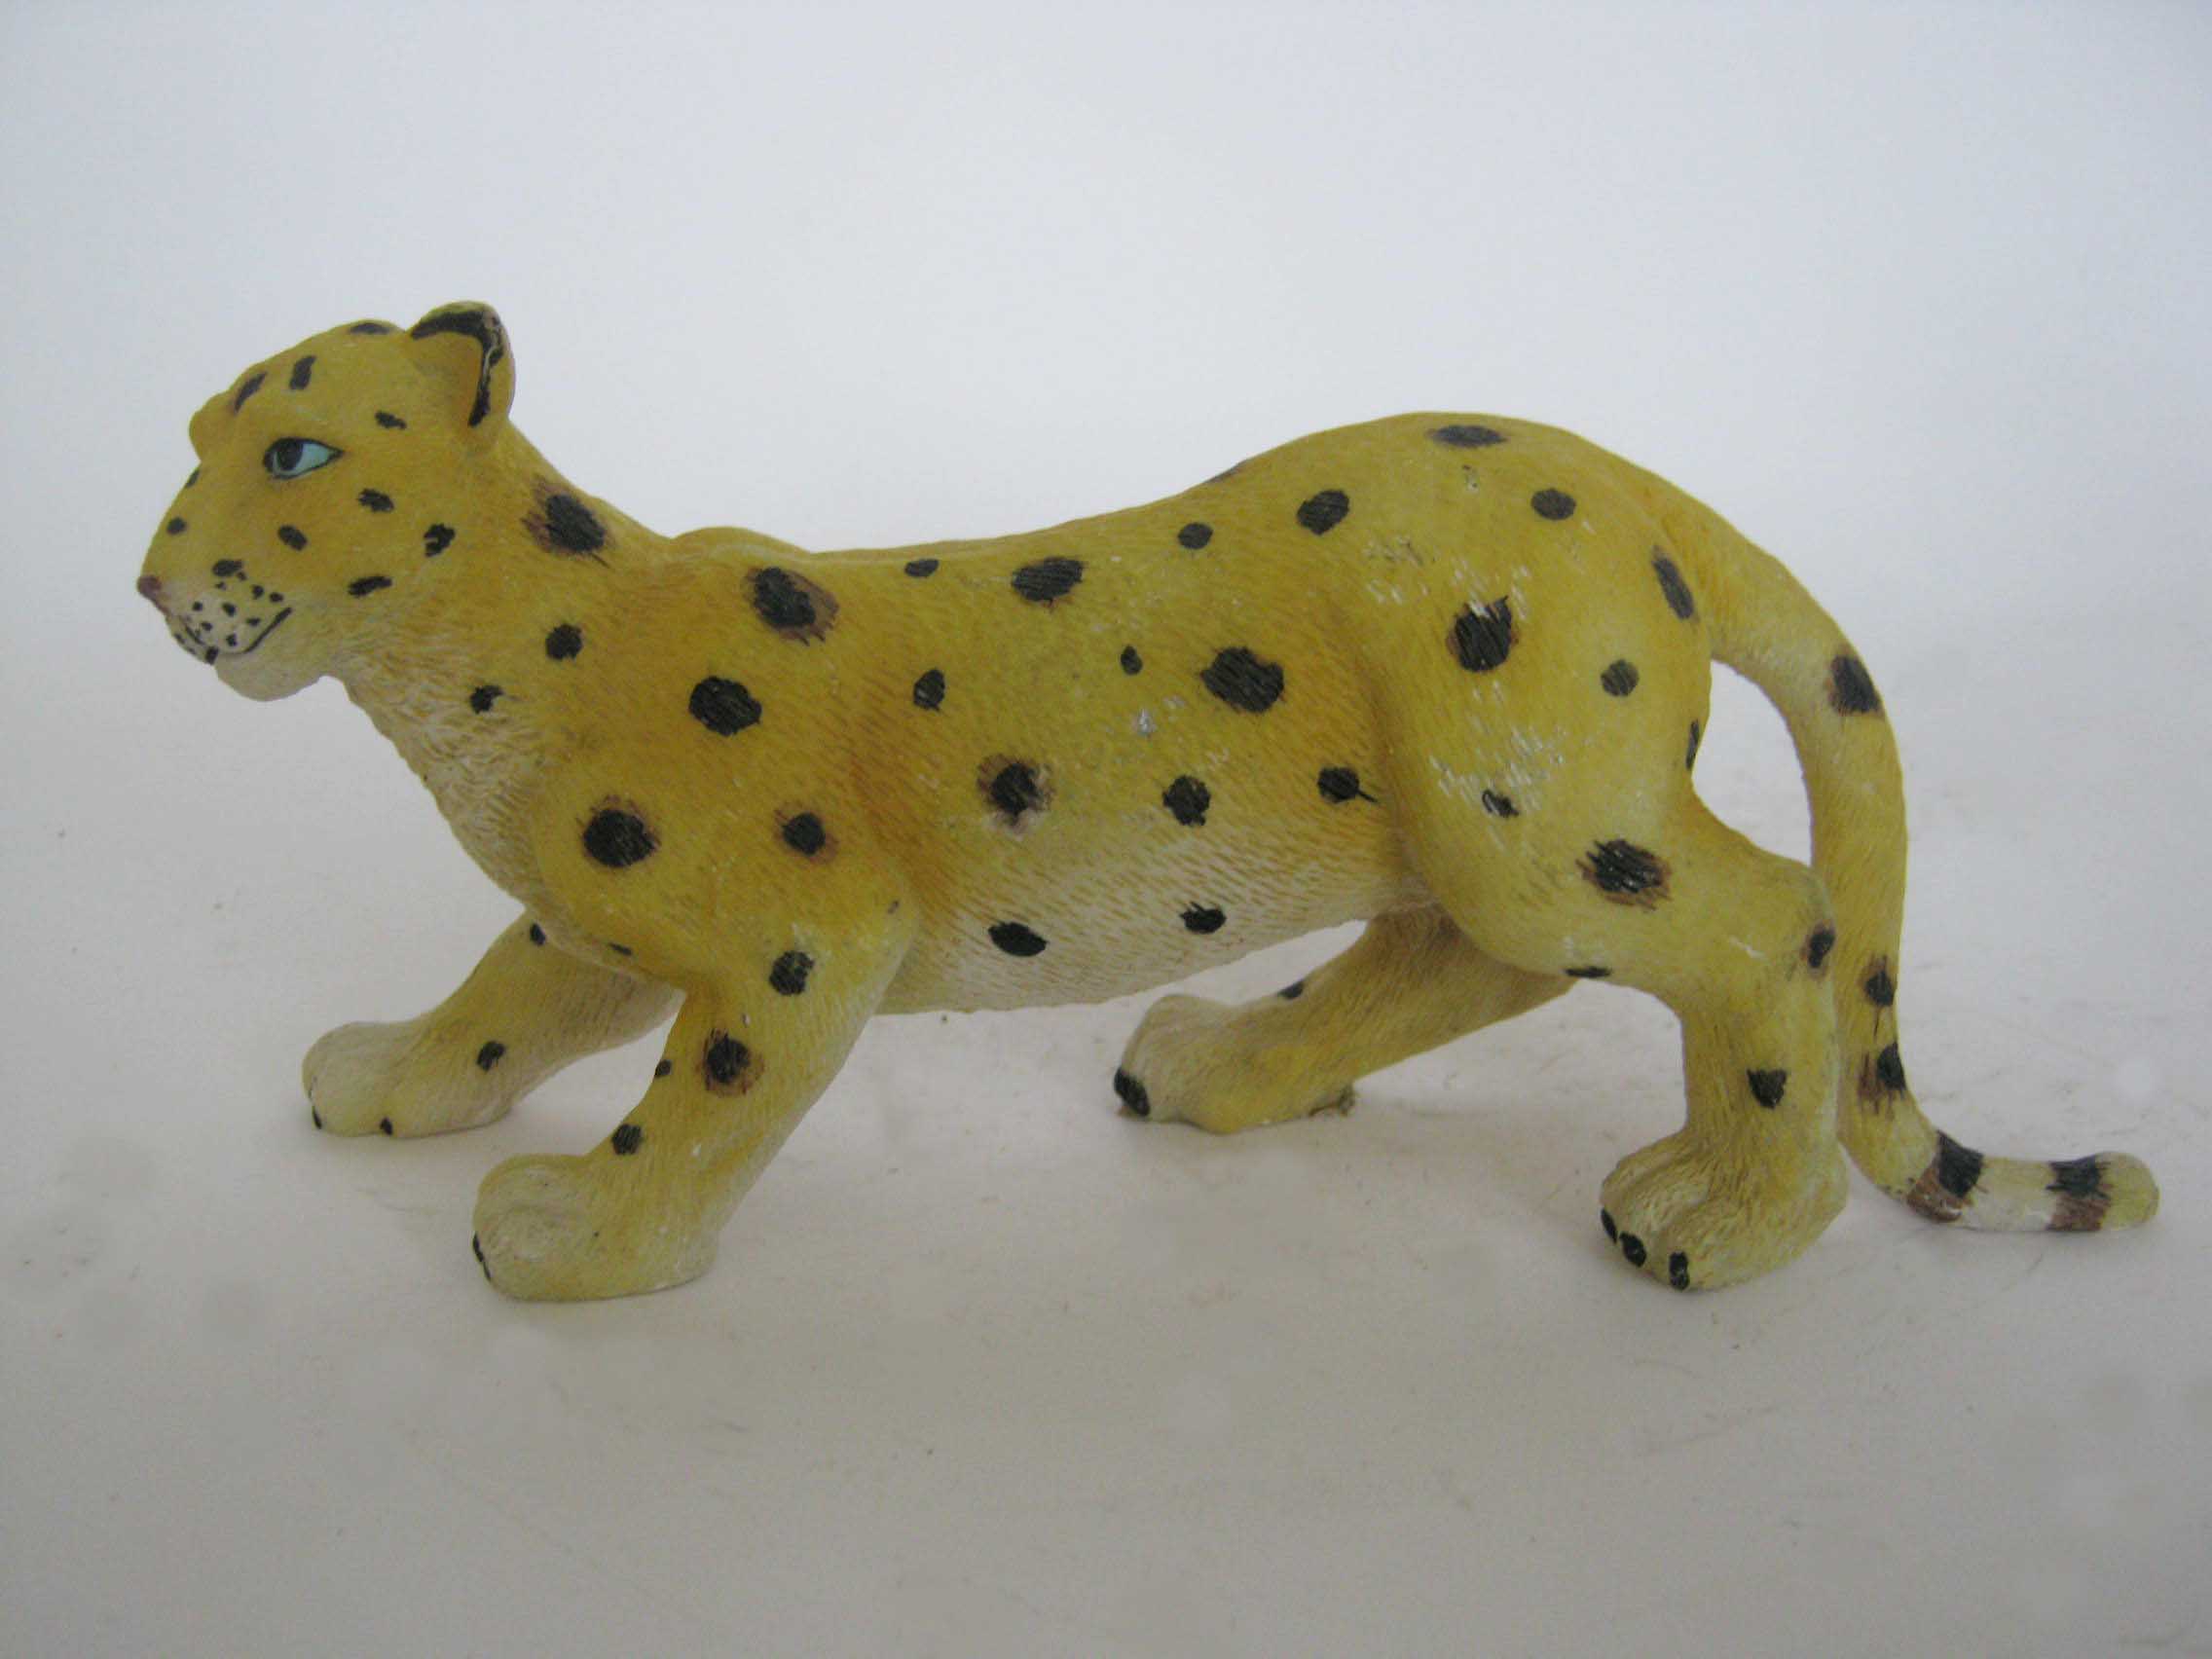 resin animal figurines